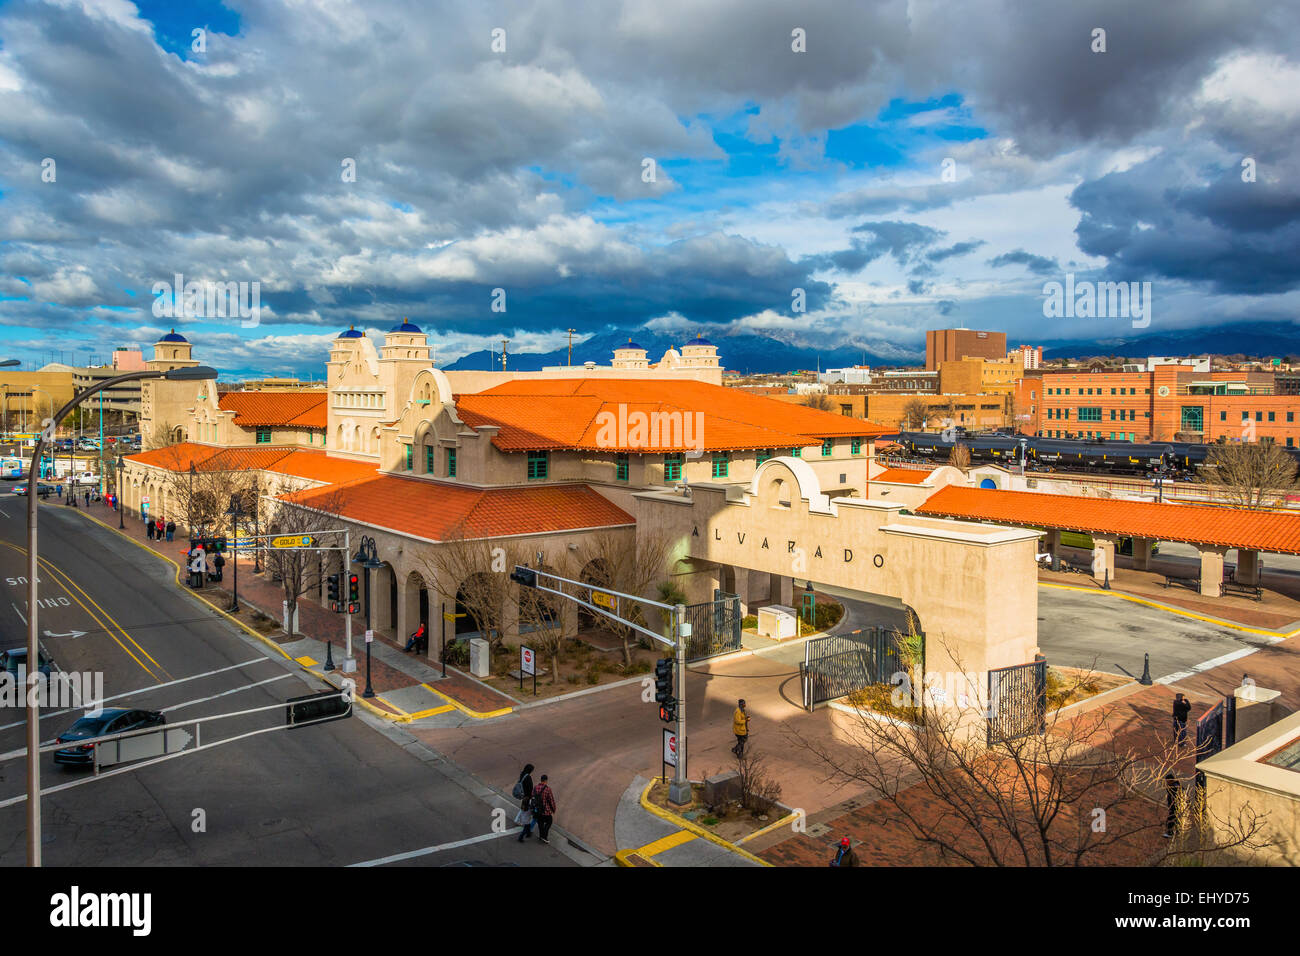 Vista del centro de transporte Alvarado, en Albuquerque, Nuevo México. Foto de stock